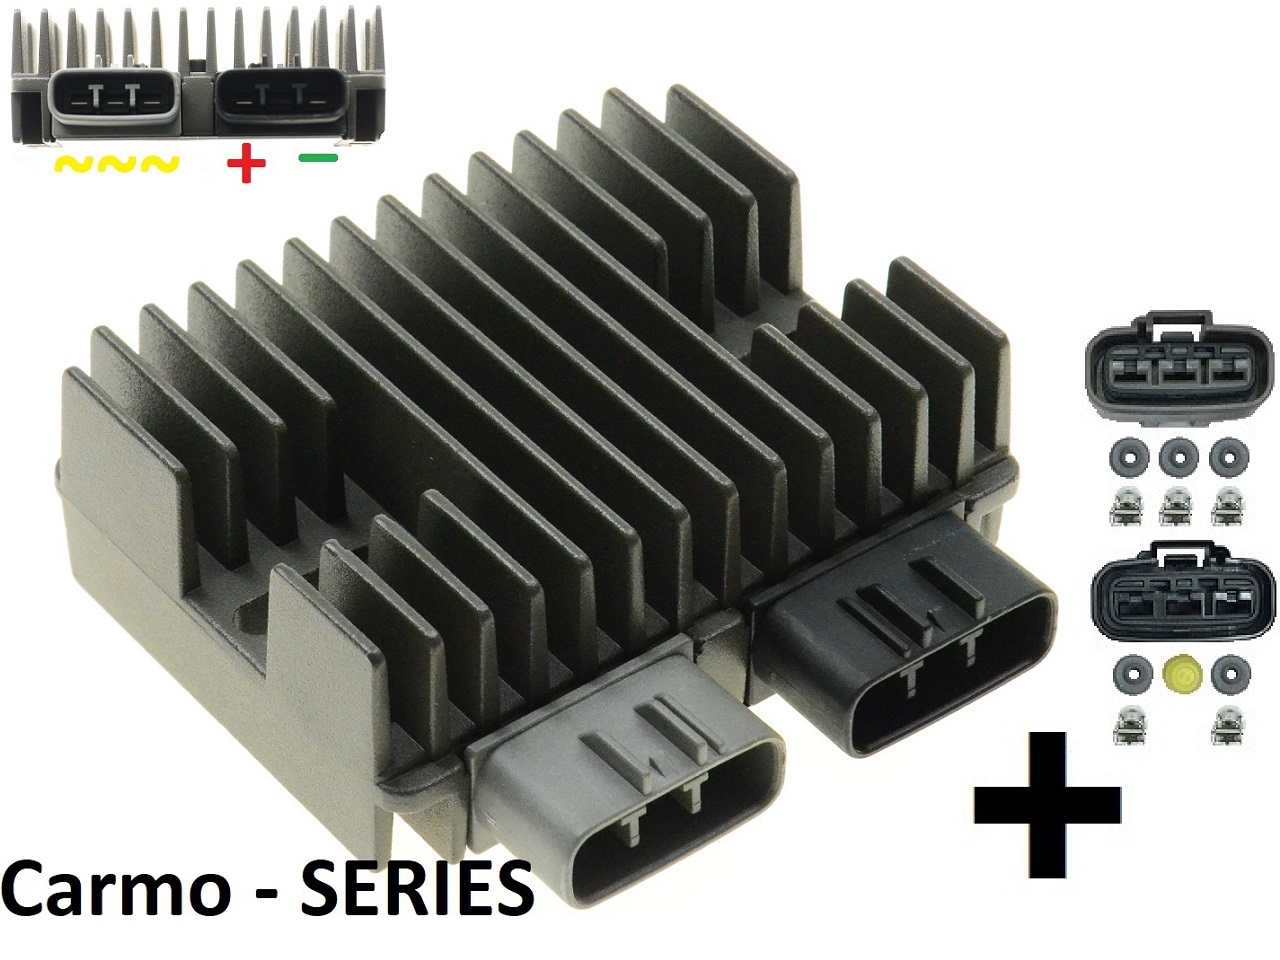 CARR5925-SERIE - MOSFET SERIE SERIES Rectificador de regulador de voltaje (Mejorado SH847) me gusta compu-fire + conectores - Haga click en la imagen para cerrar